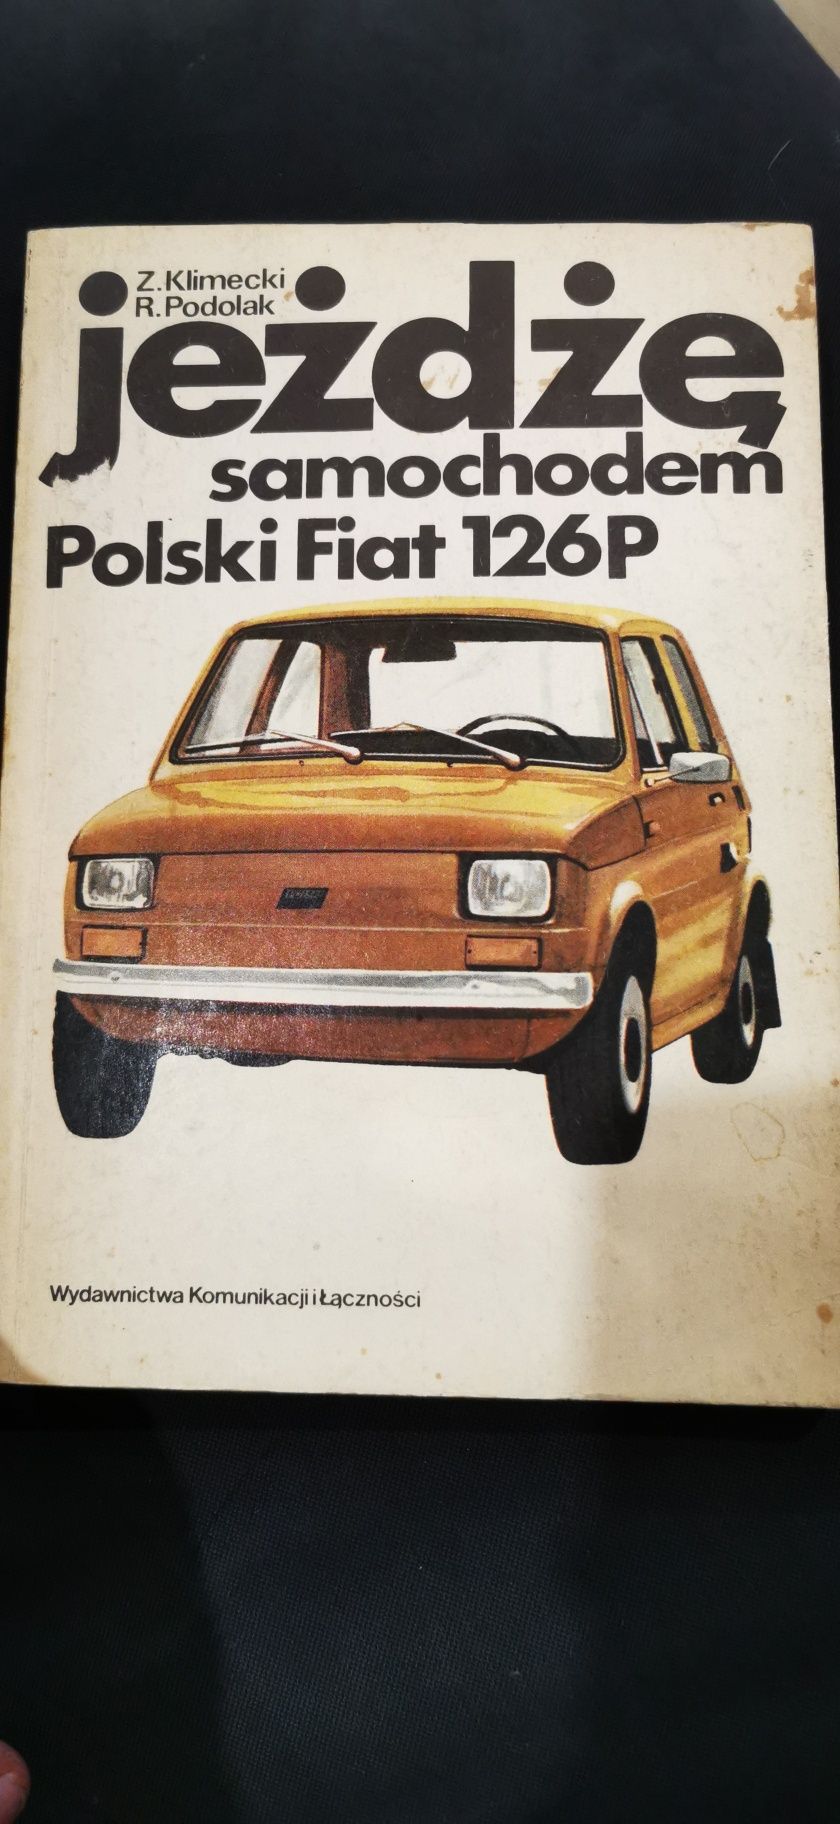 Jeżdżę samochodem Polski Fiat 126P Z. Klimecki R. Podolak WKŁ